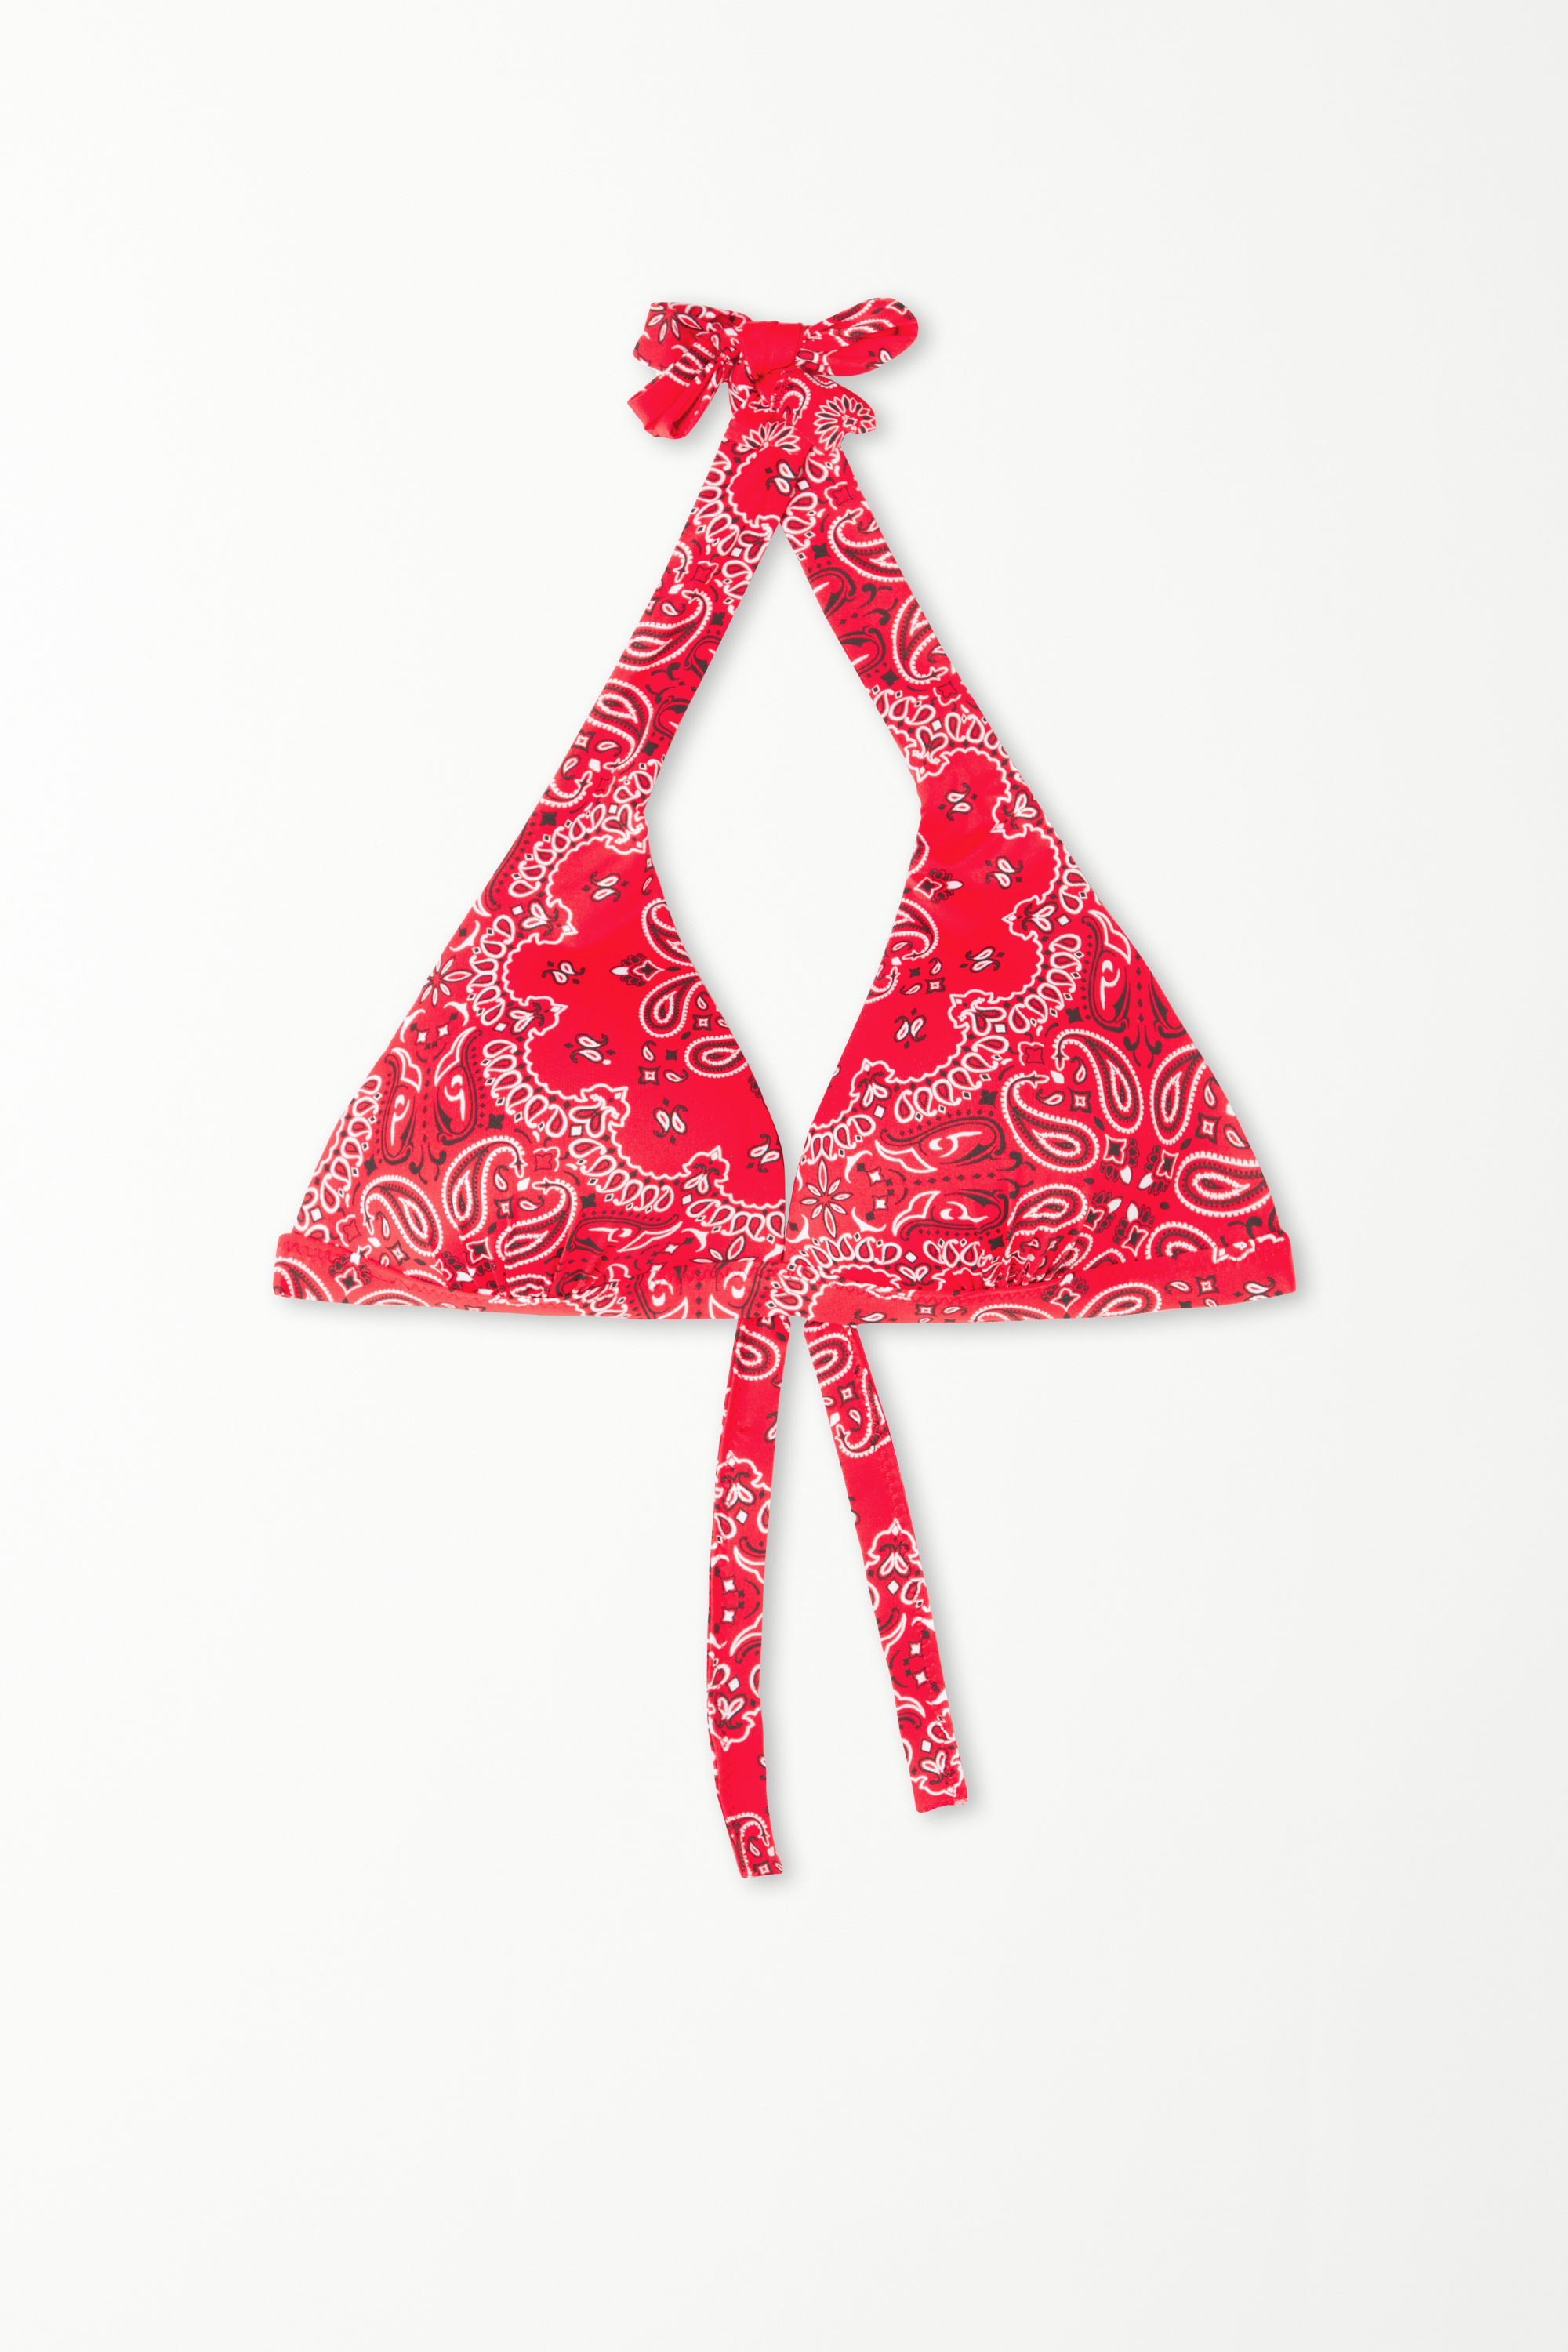 Červená Mierne Vystužená Trojuholníková Bikinová Podprsenka s Kašmírovým Vzorom Family